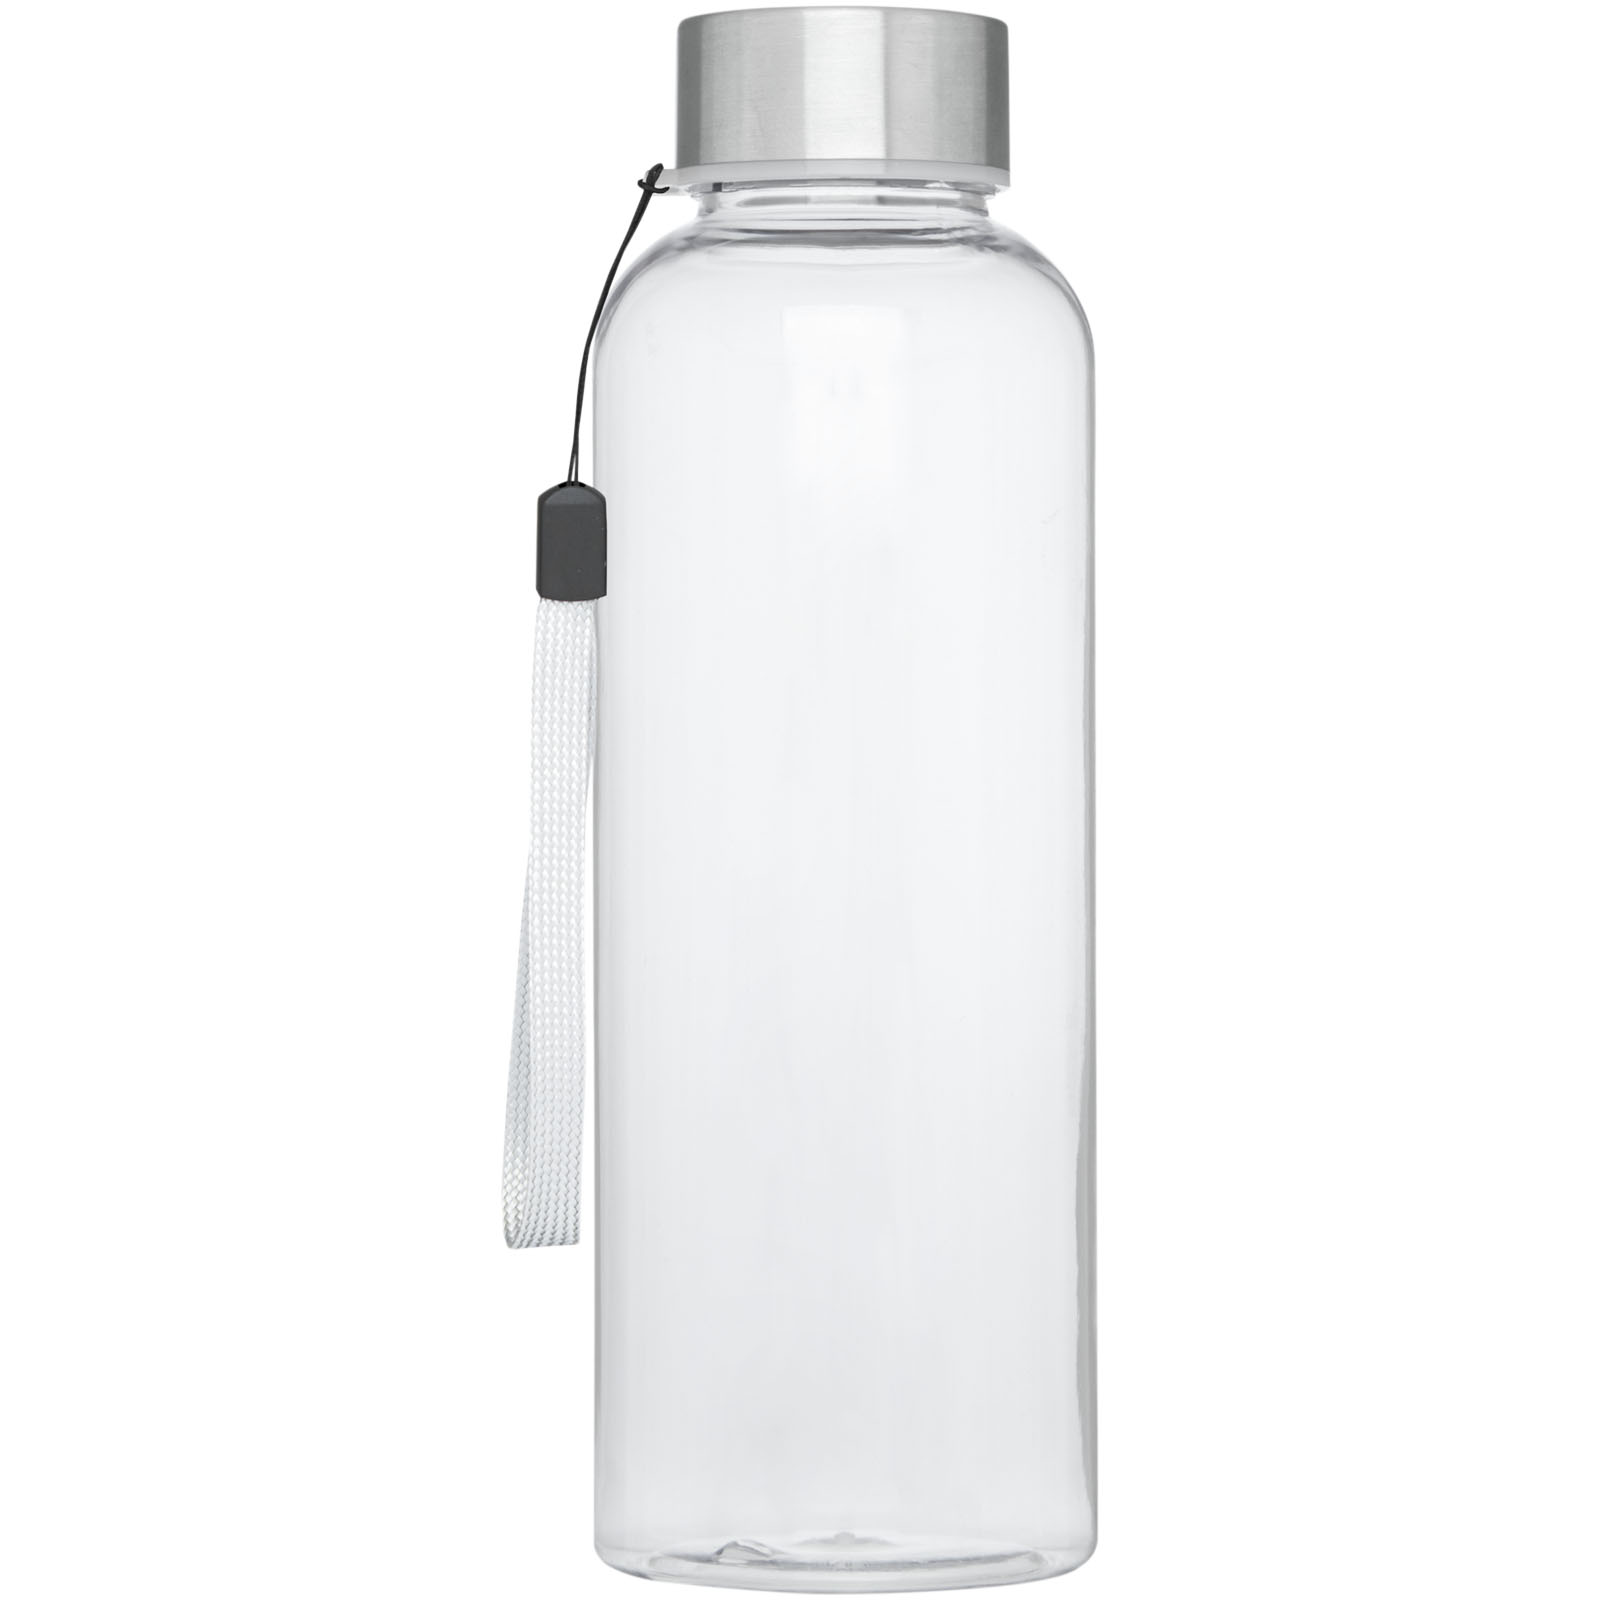 Advertising Water bottles - Bodhi 500 ml RPET water bottle - 2